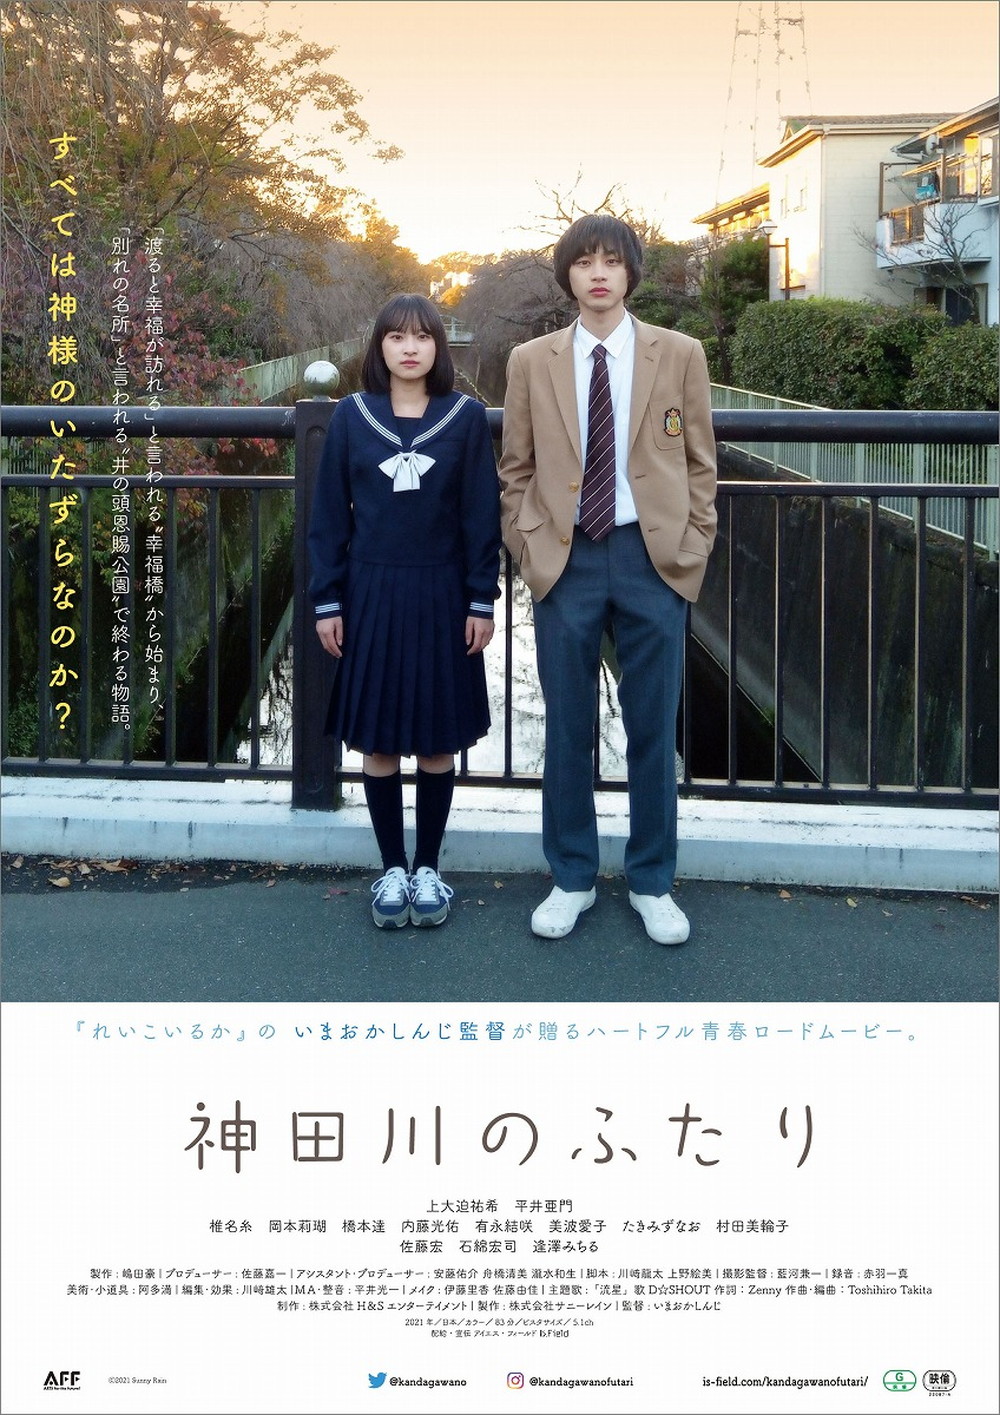 Kandagawa No Futari film - Shinji Imaoka - poster